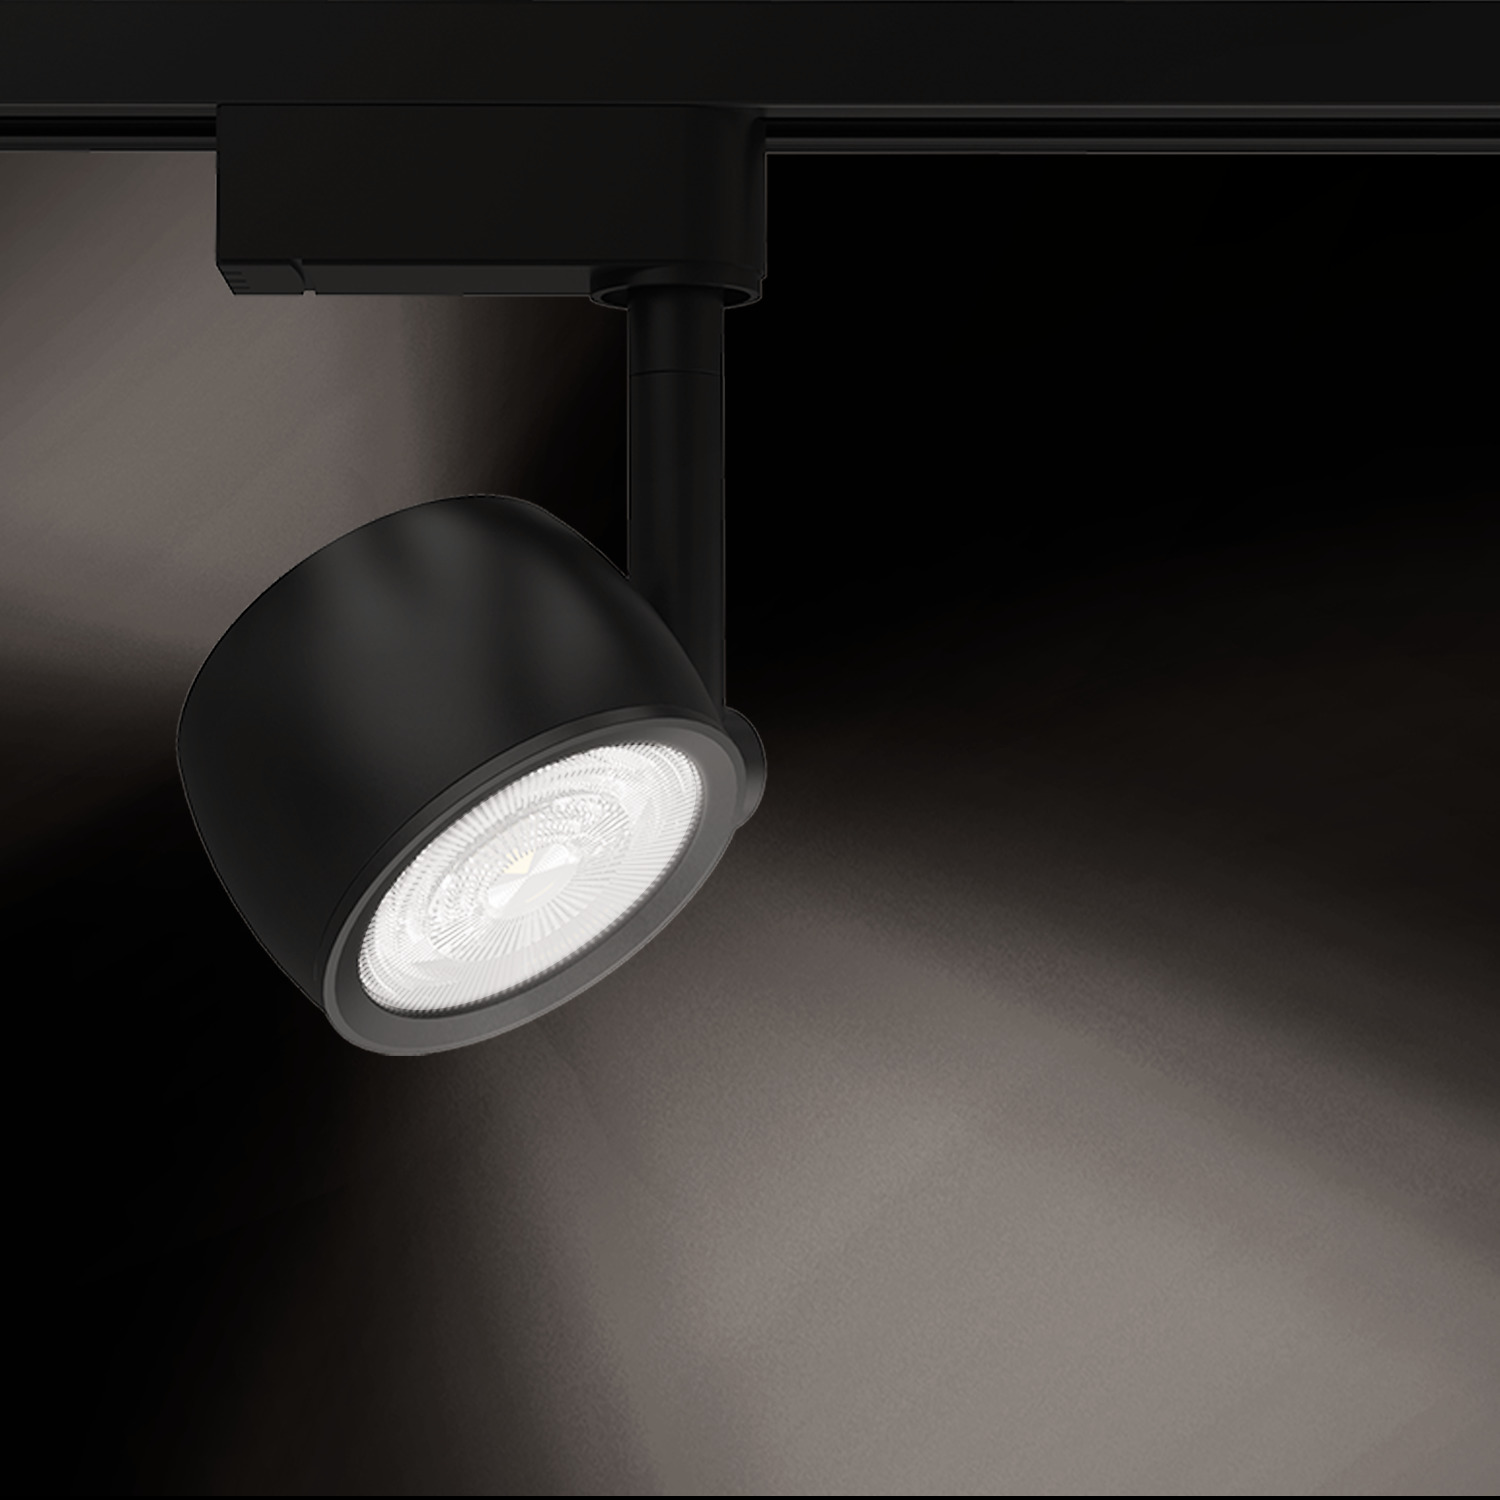 Трековый однофазный светильник Gauss LED с подсветкой, 4000К, 520 Лм, цвет черный, форма круг, 12Вт - фото 3